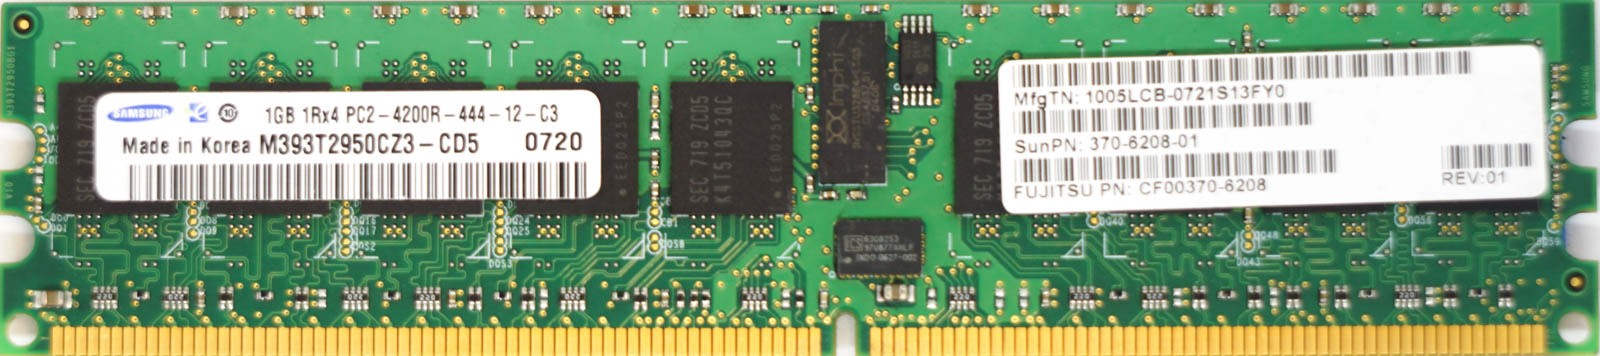 Samsung - 1GB PC2-4200R (DDR2-533Mhz, 1RX4)